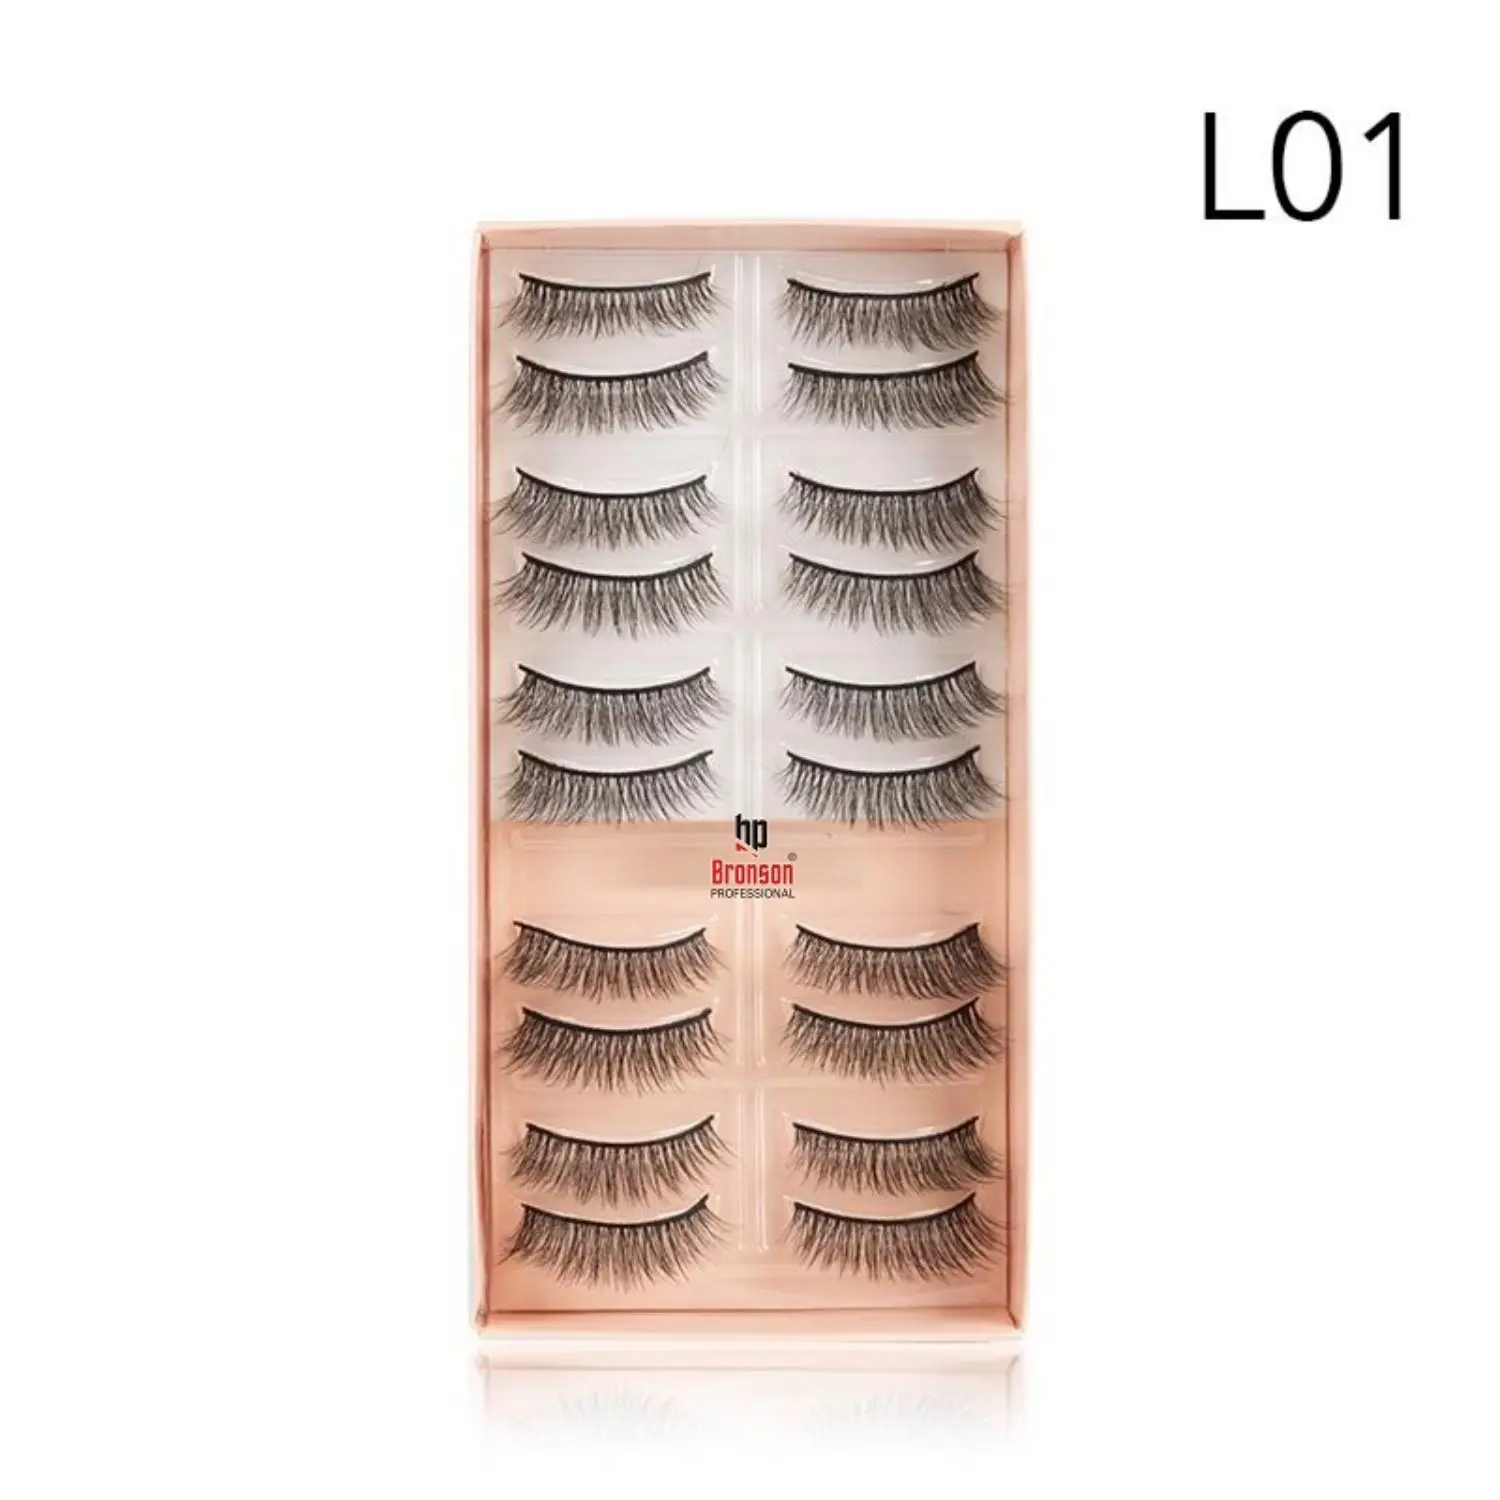 Eyelash set 3D false long and natural eye makeup 10 pairs No. L01